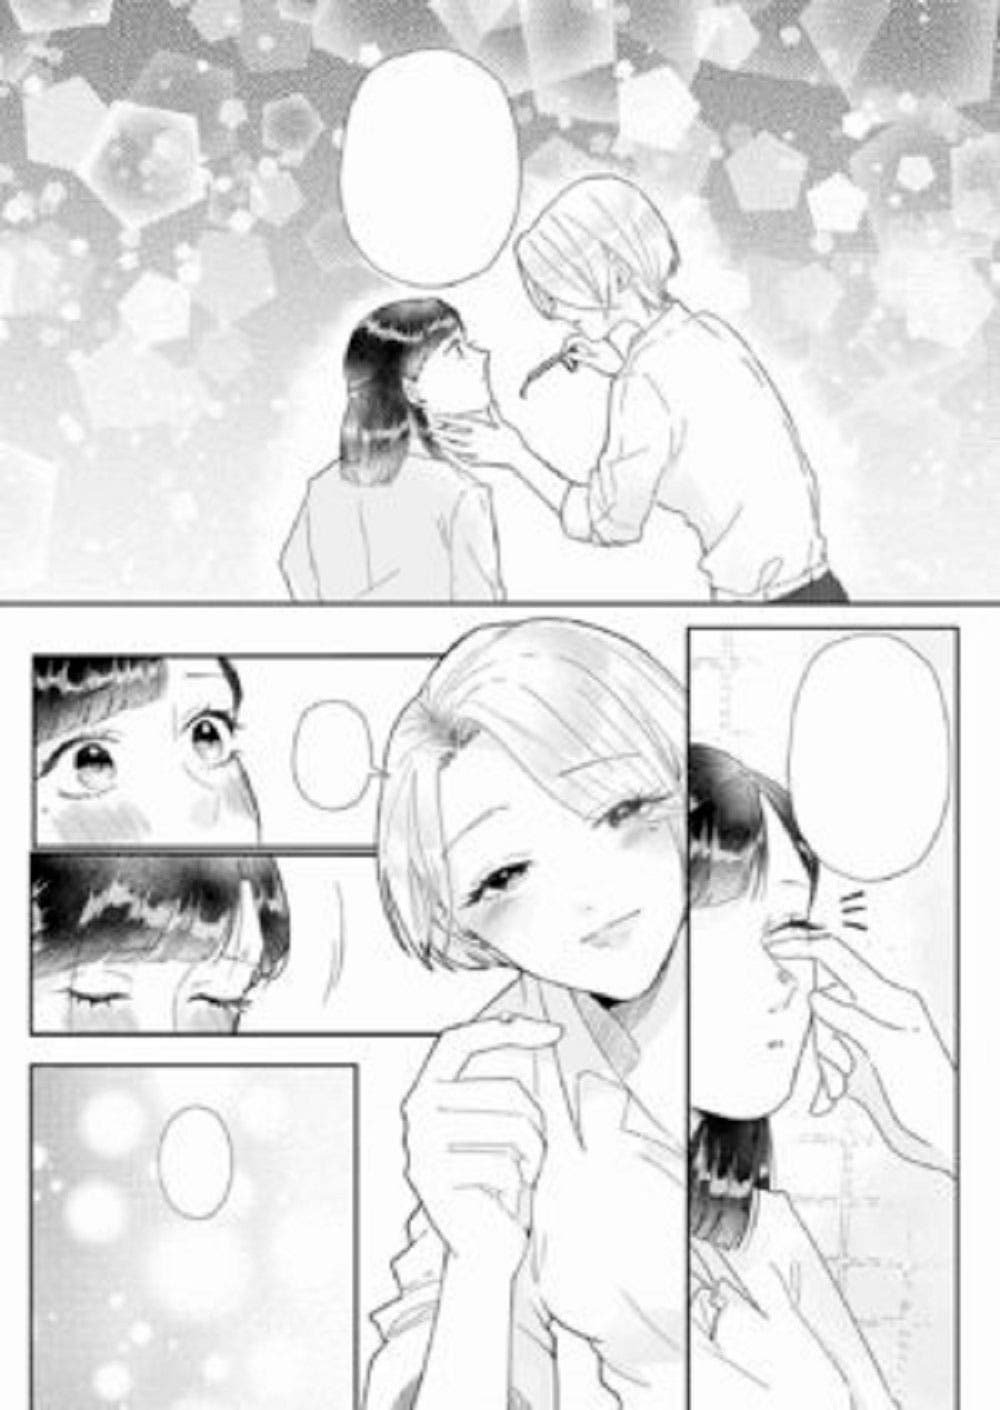 Rika y Mio en el manga yuri Liberación: las diversas formas del amor